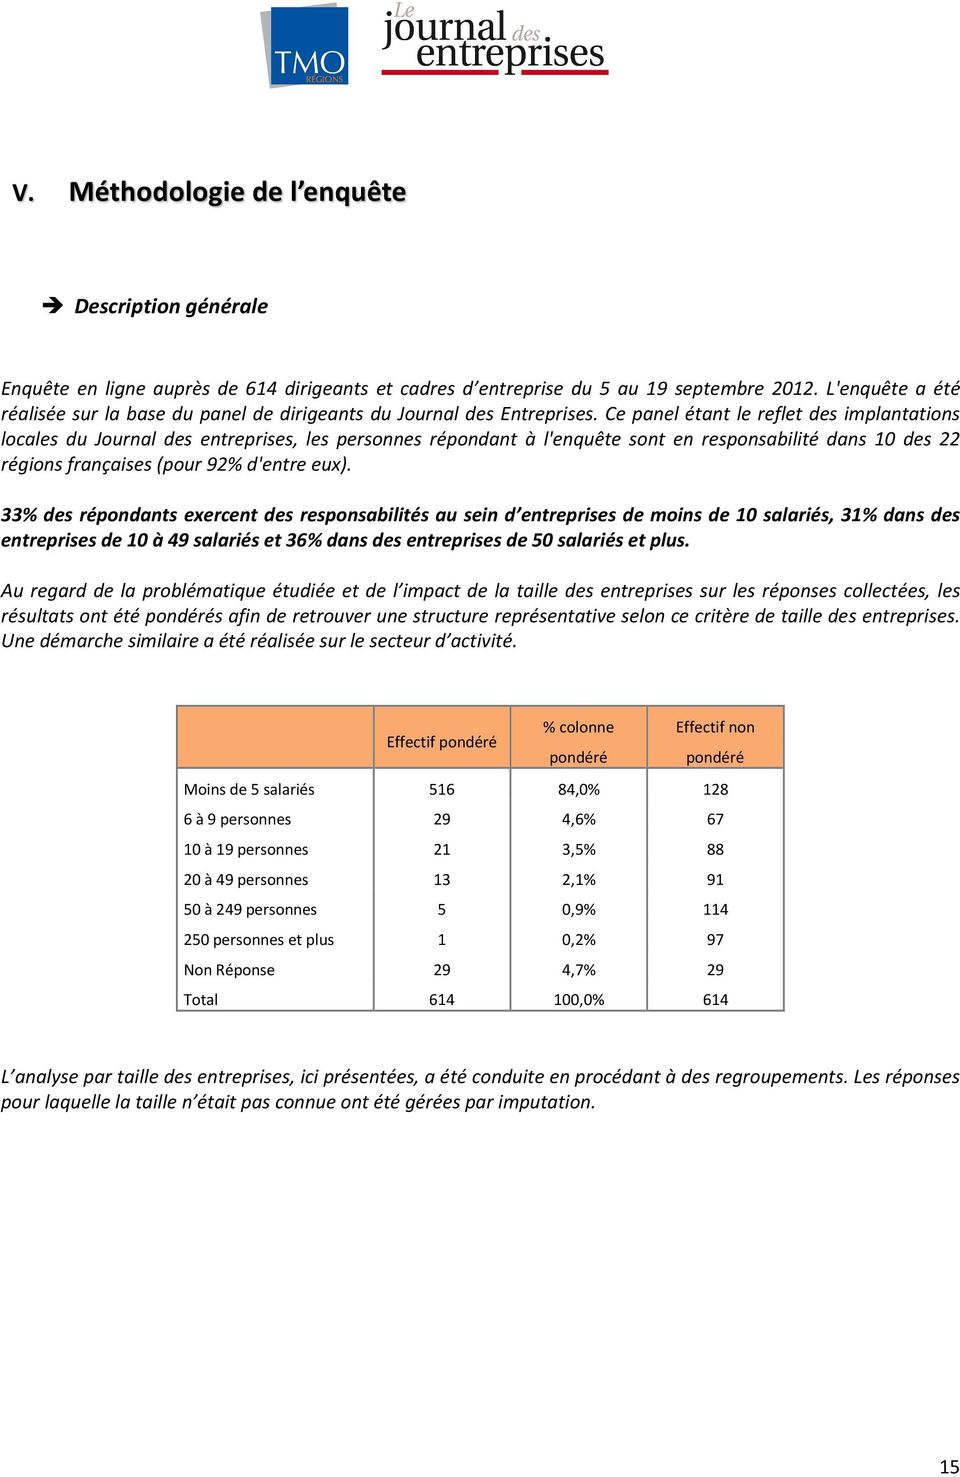 Ce panel étant le reflet des implantations locales du Journal des entreprises, les personnes répondant à l'enquête sont en responsabilité dans 10 des 22 régions françaises (pour 92% d'entre eux).